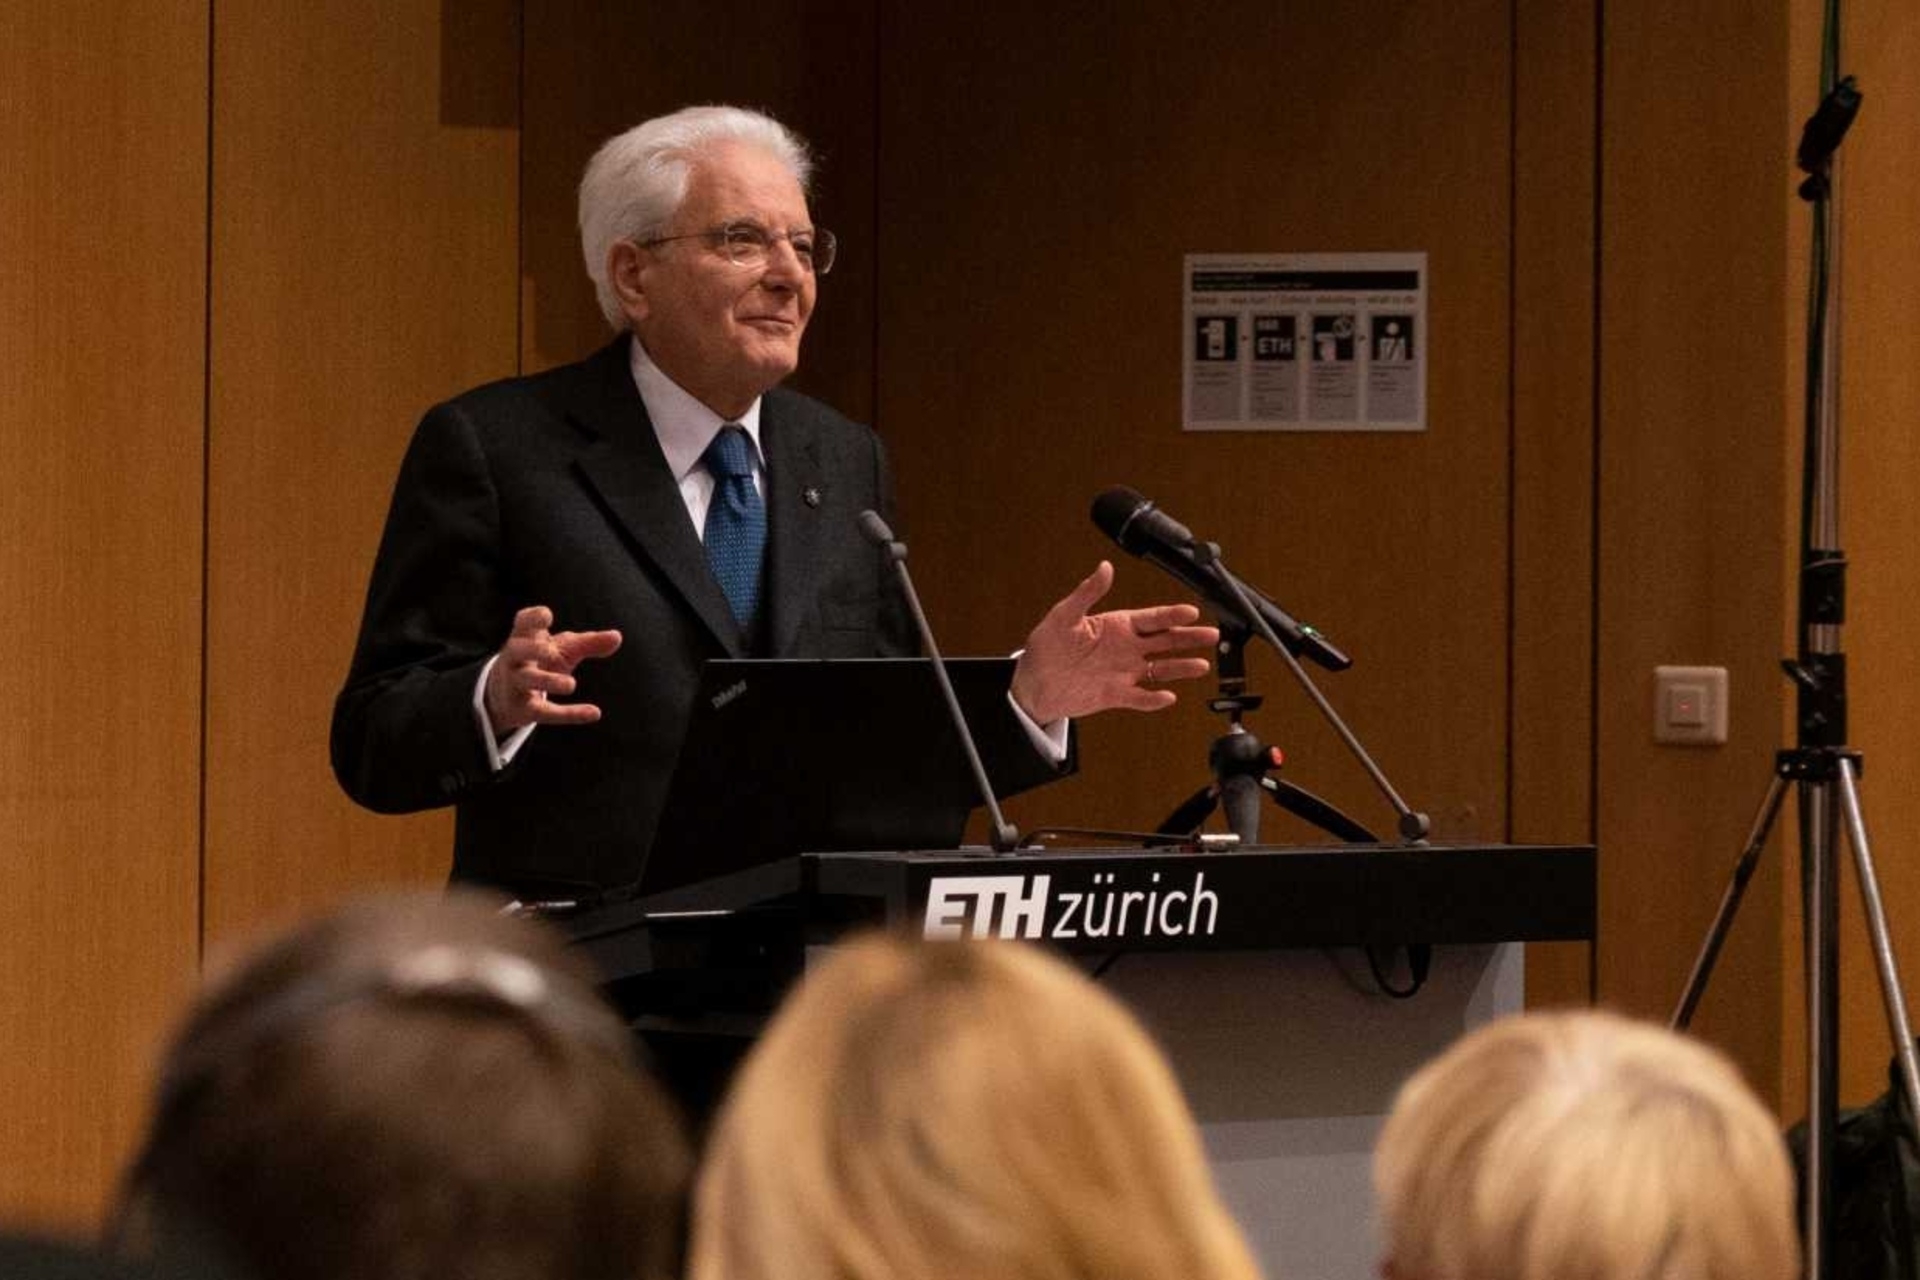 Sergio Mattarella održao je govor na ETH Zurich tijekom svog trodnevnog posjeta Švicarskoj 28., 29. i 30. studenog 2022.